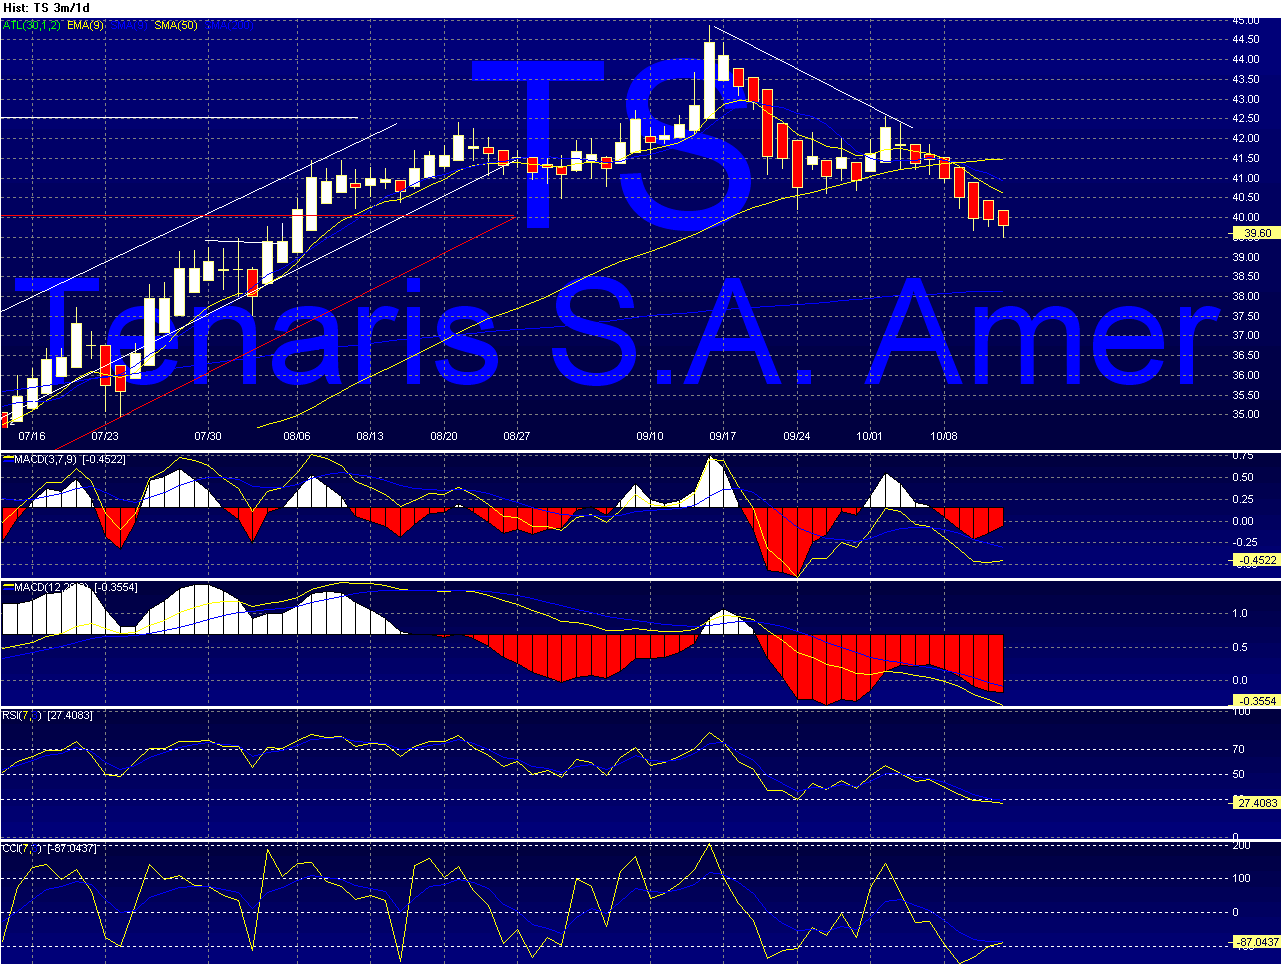 TS - Tenaris Chart_32